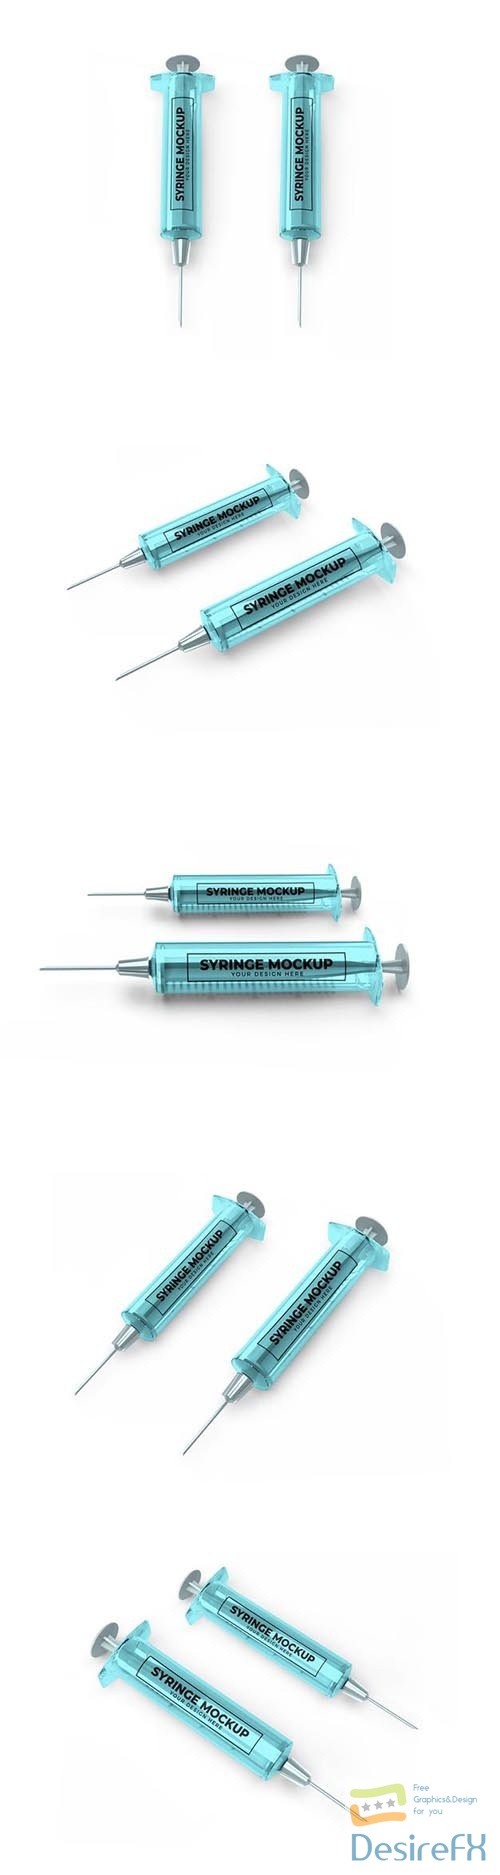 Medical syringe mockup